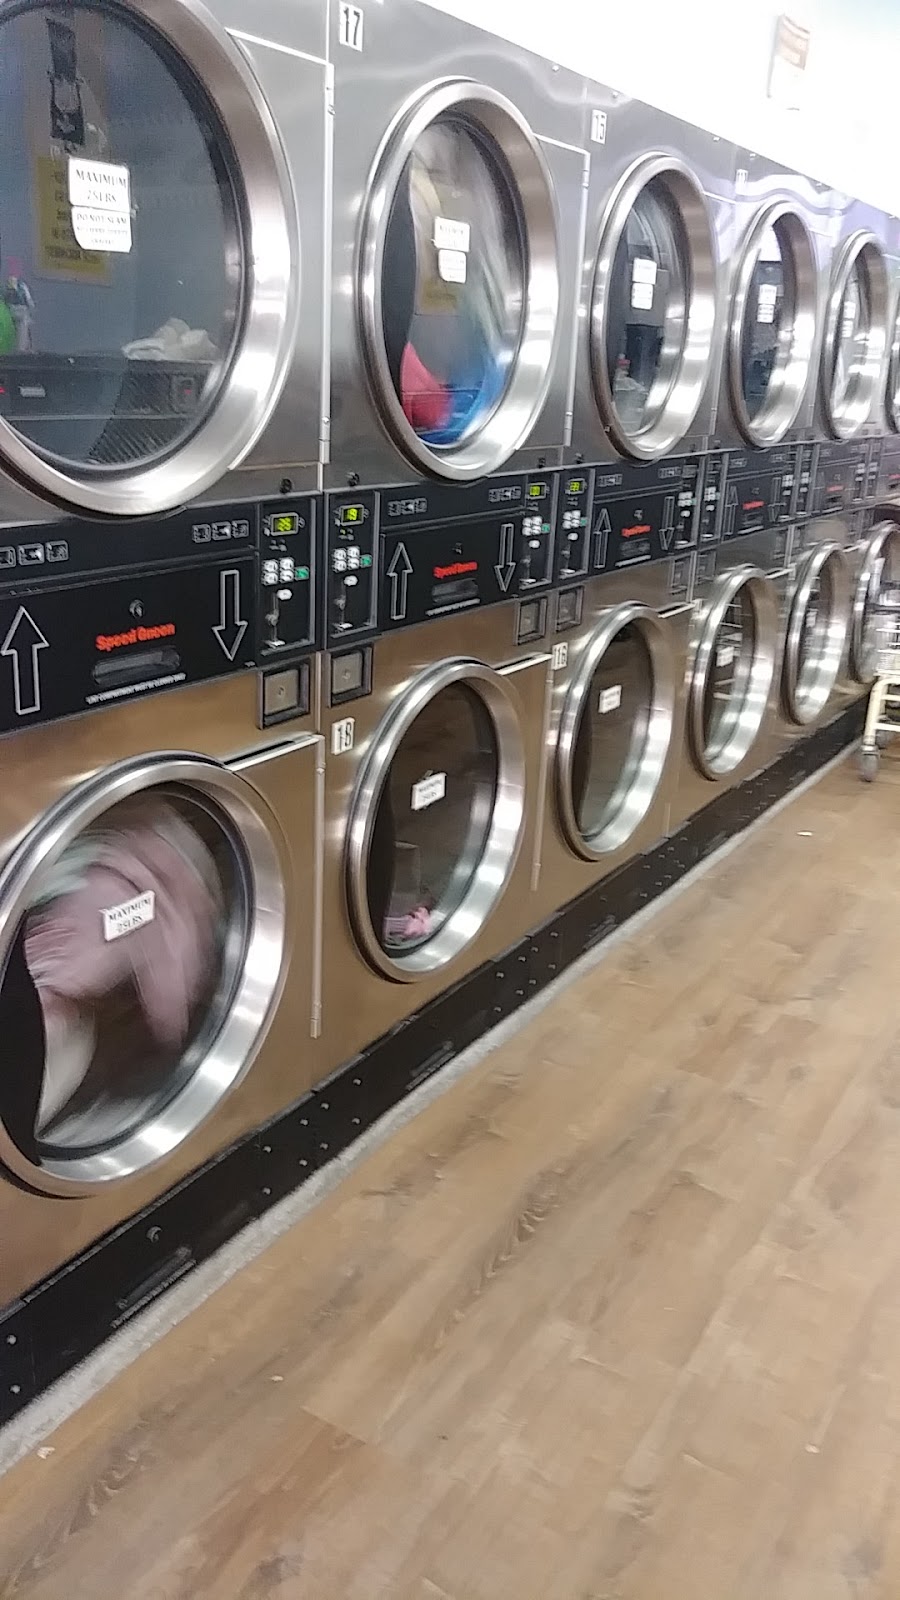 E.N.&S. Laundromat | 172 Tompkins Ave, Brooklyn, NY 11206 | Phone: (718) 782-2019